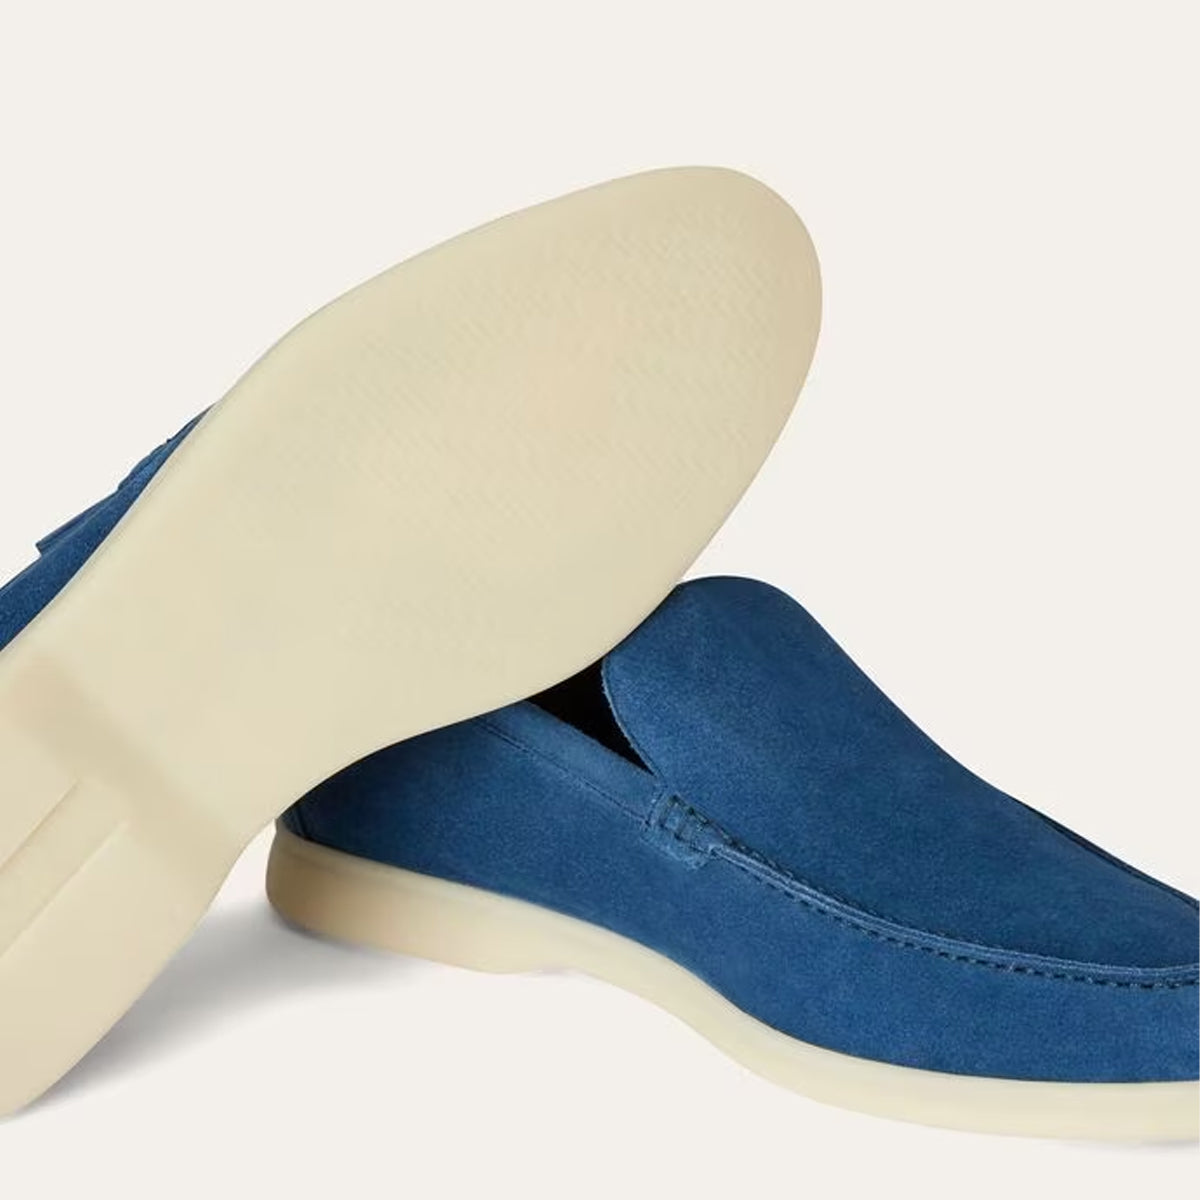 Men's Comfort Driven Old Money Style Trendiest Loafers